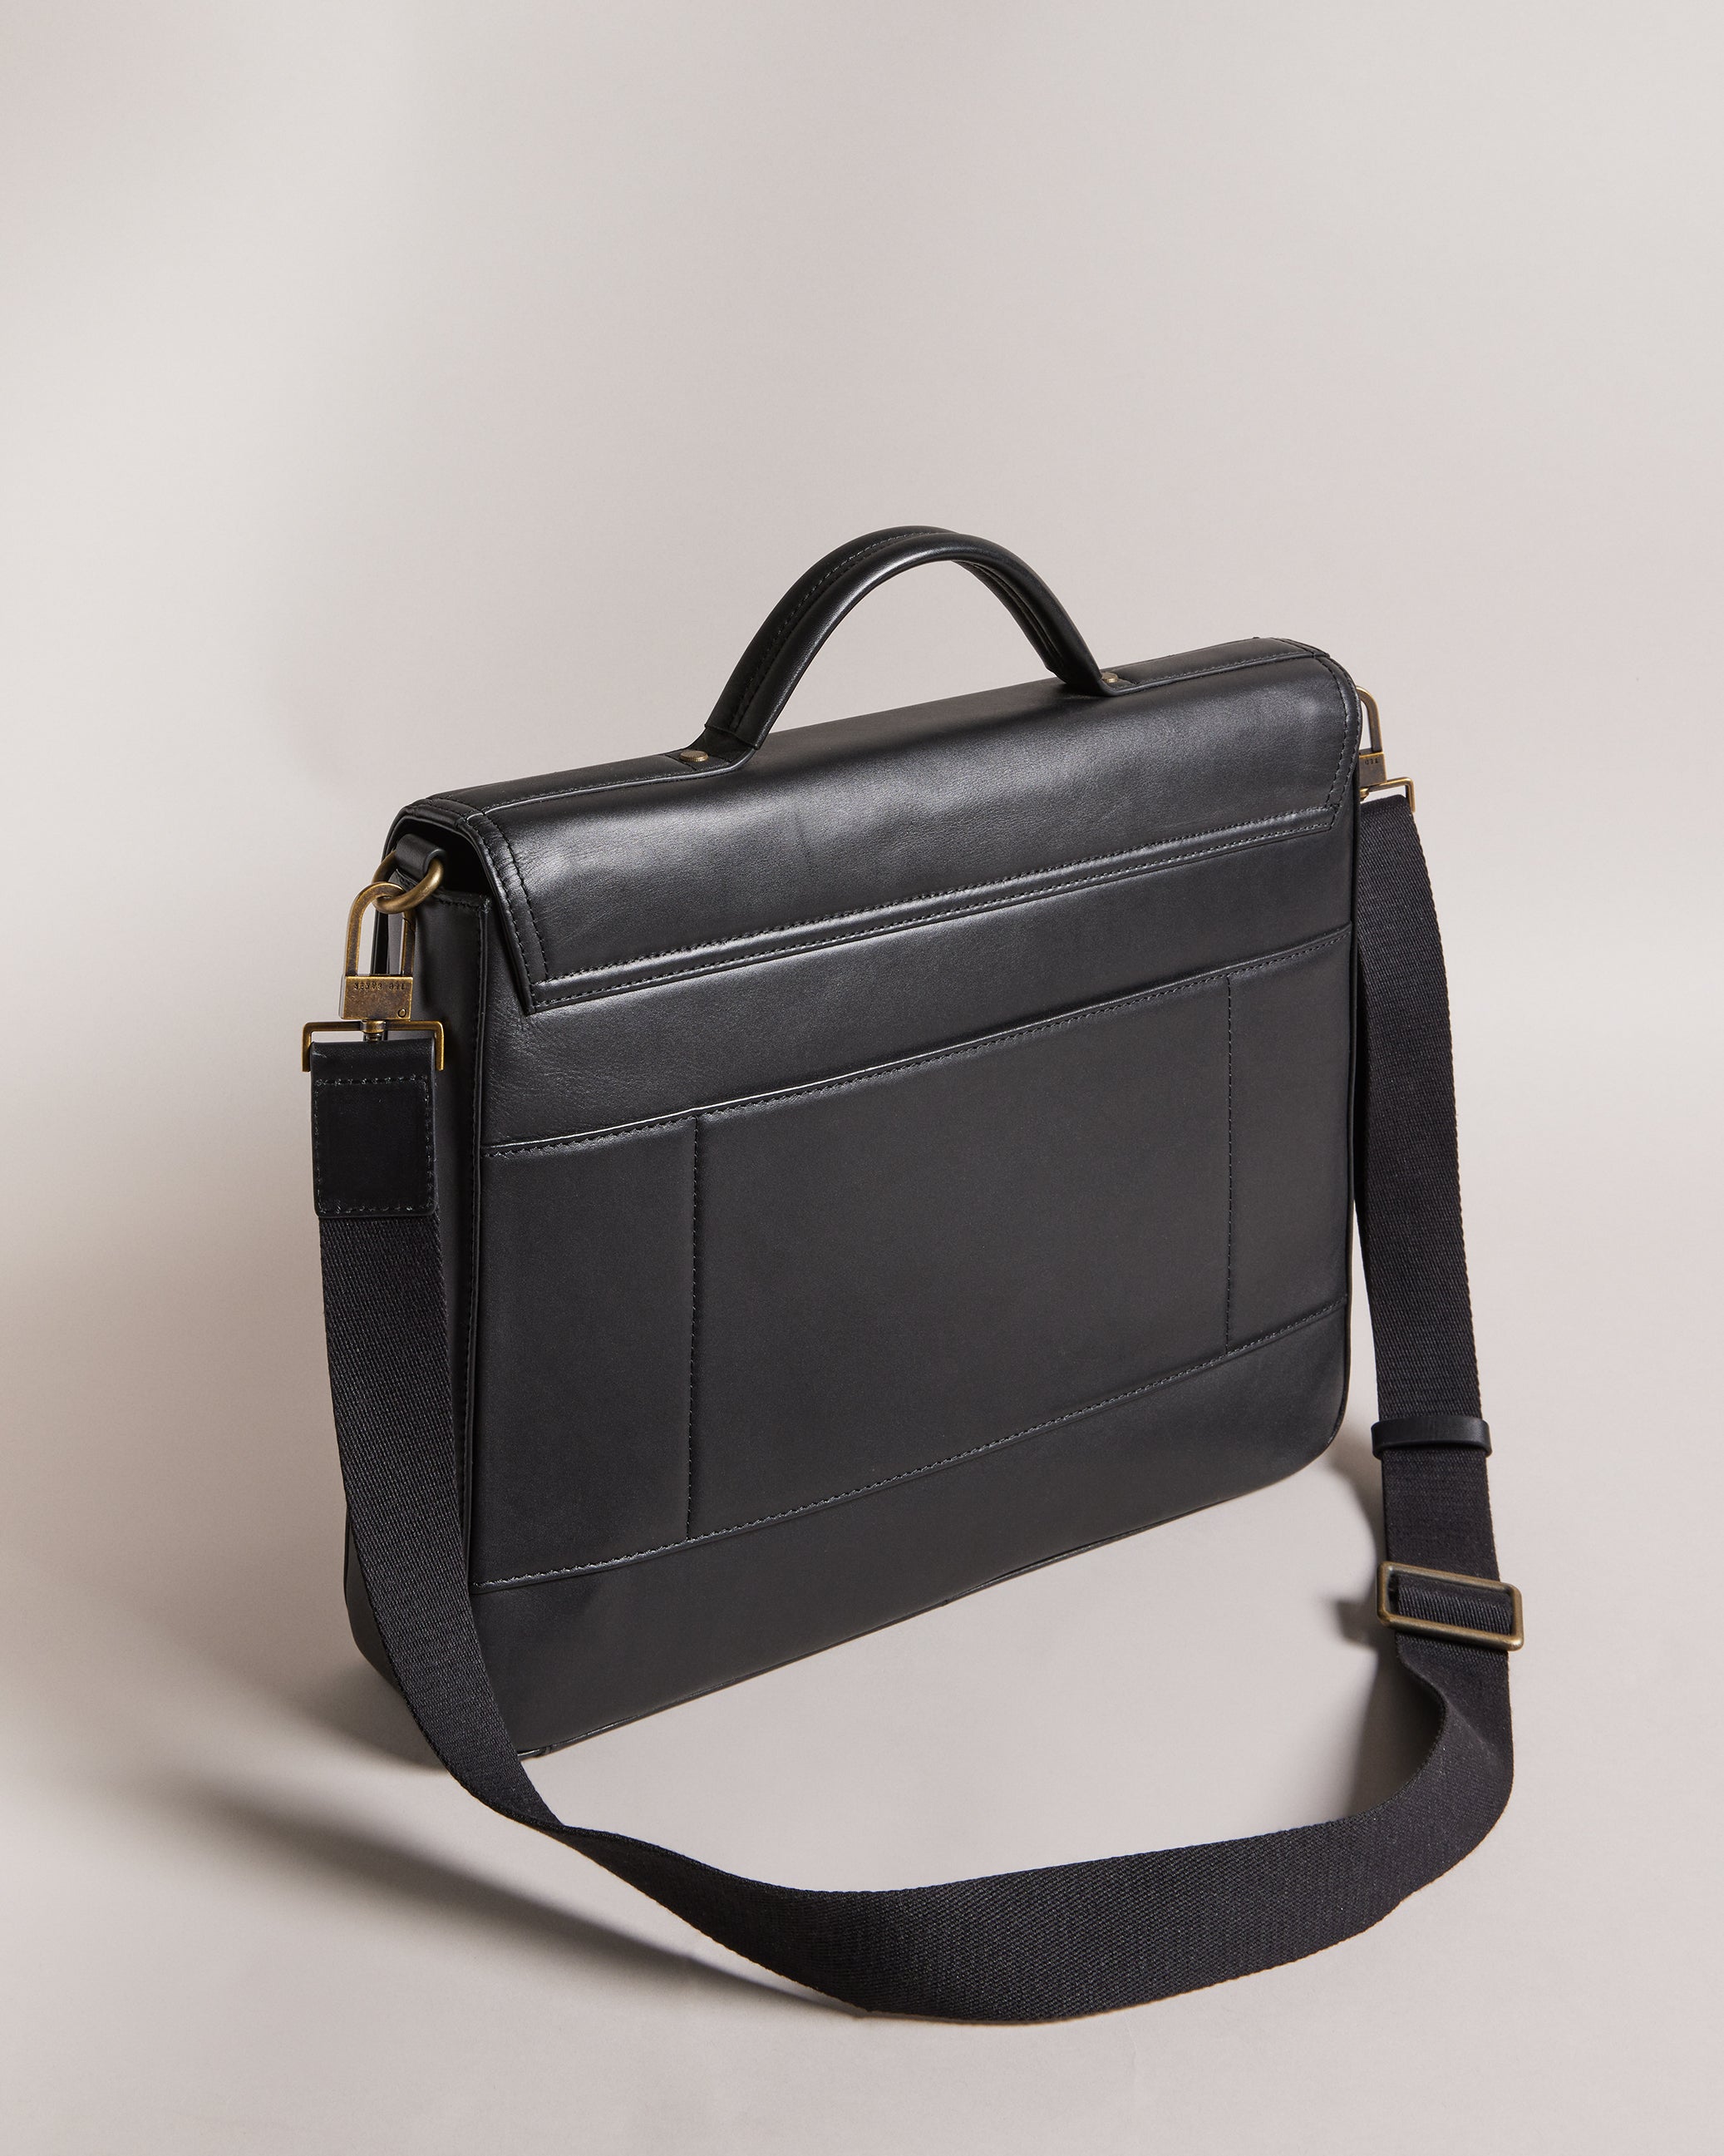 Kalson Trunk Lock Leather Messenger Bag Black